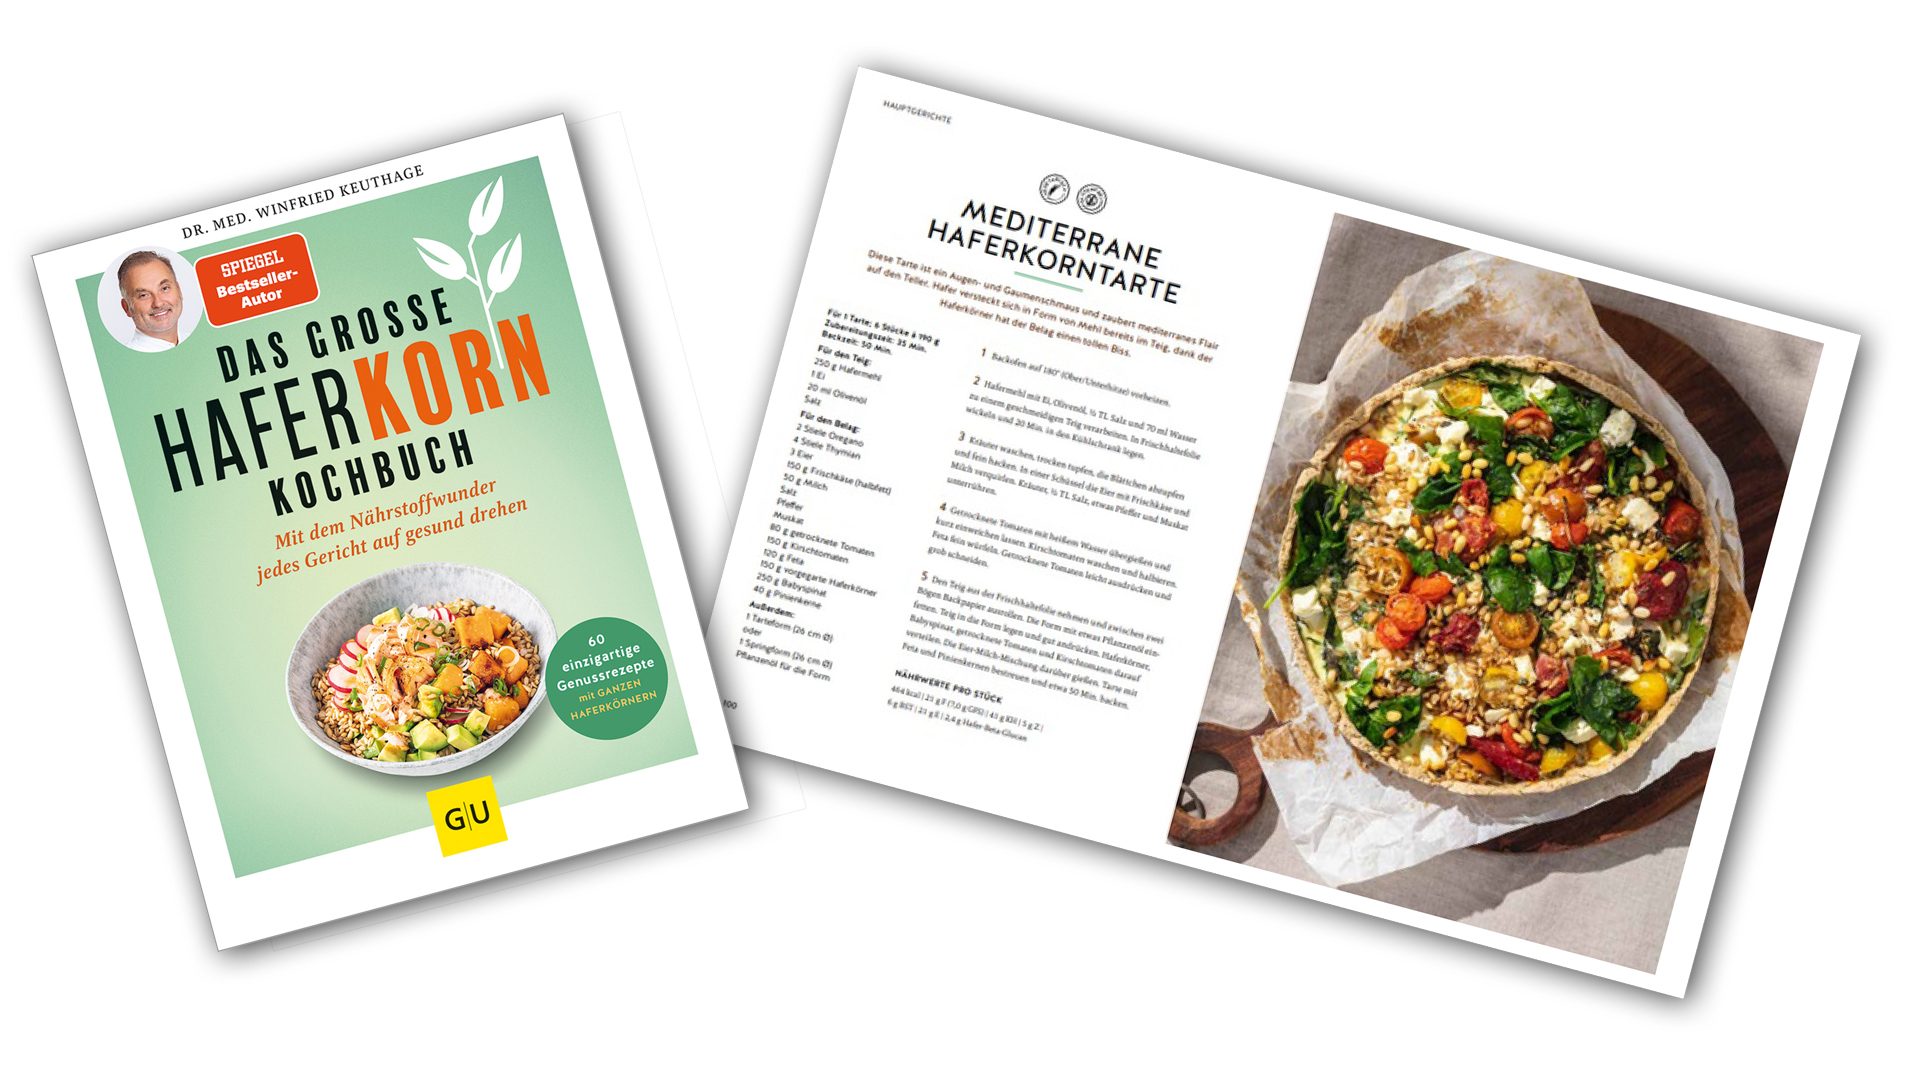 „Das große Haferkorn-Kochbuch“: Einführung in die vielseitige Welt des gesunden Getreides